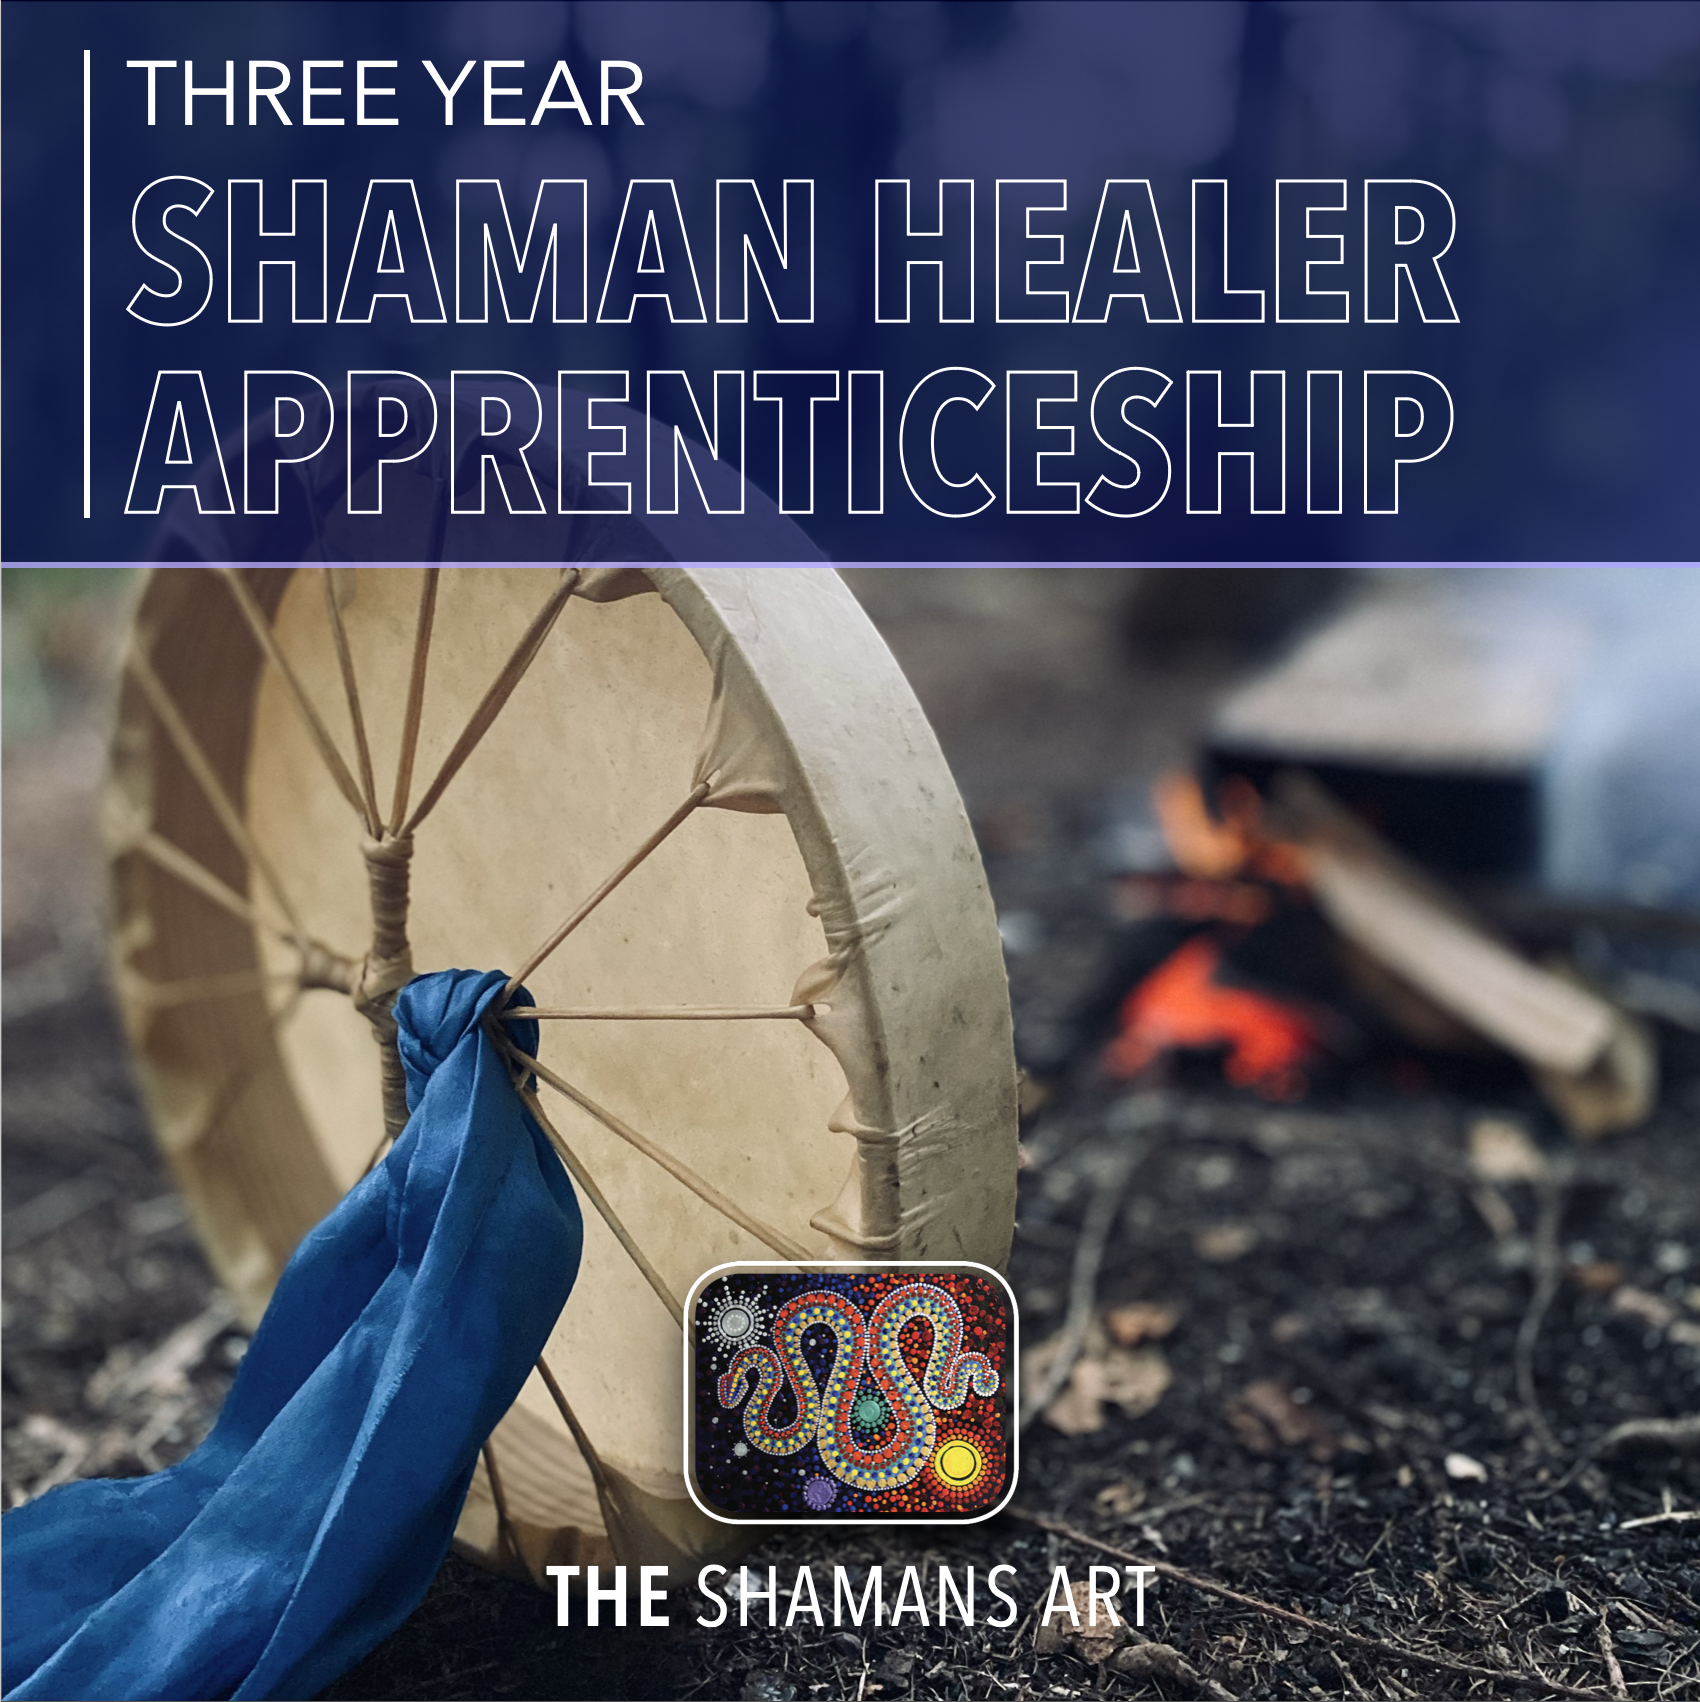 Shaman Healer